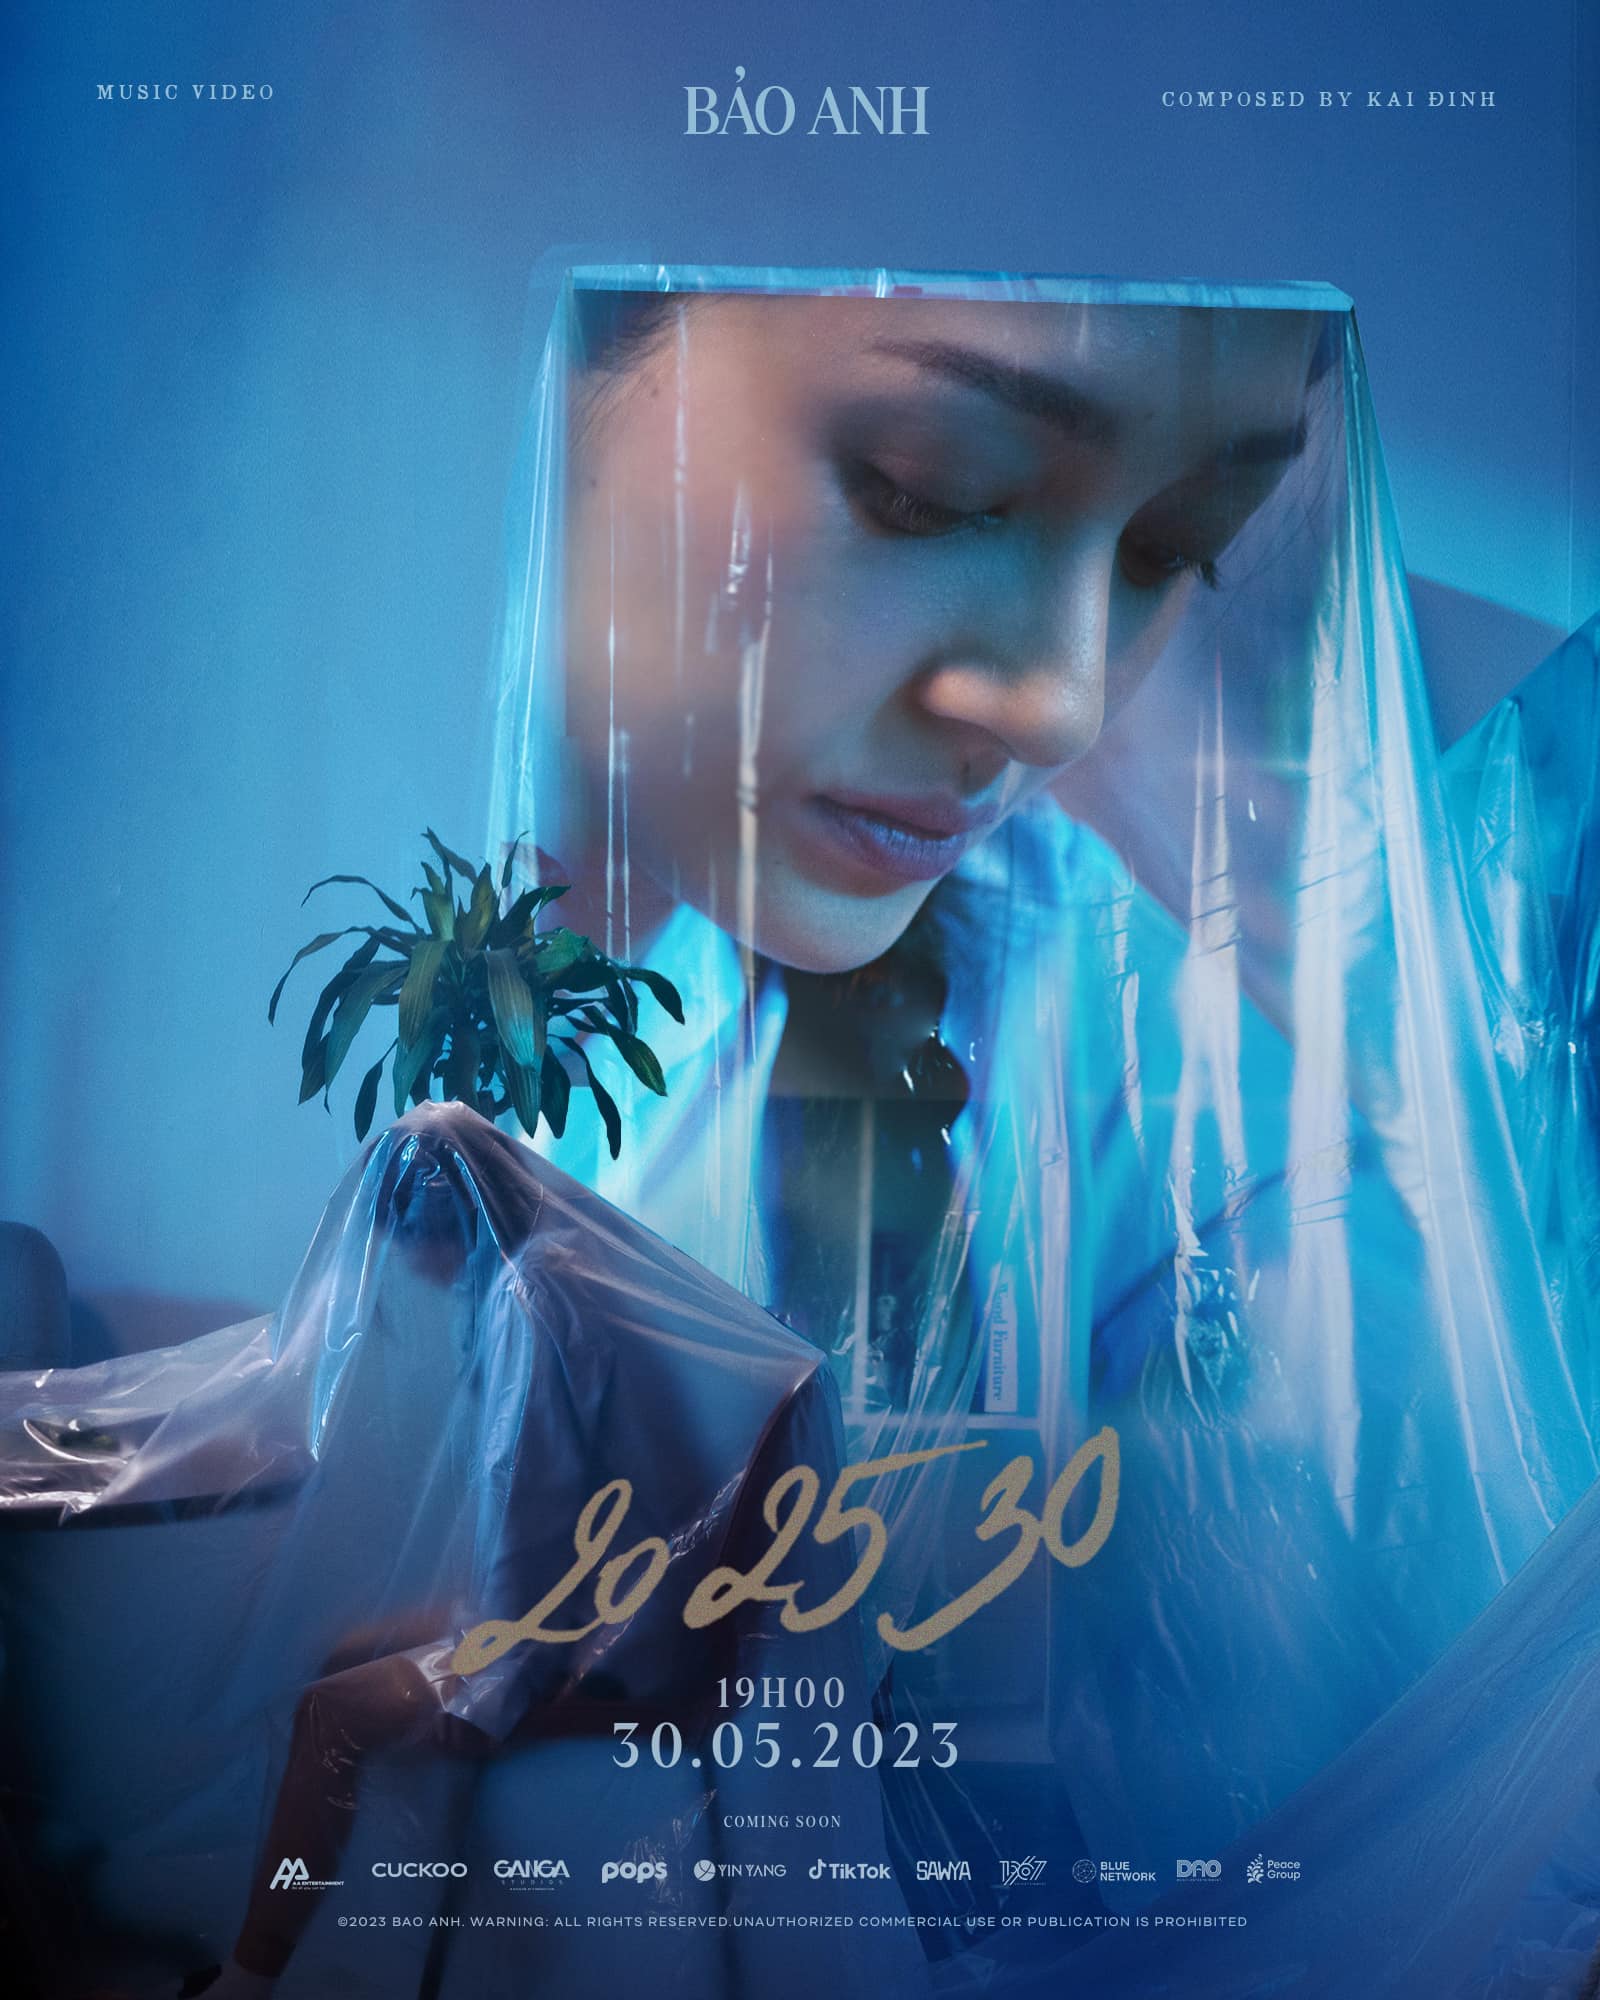 Bảo Anh — 20 25 30 cover artwork